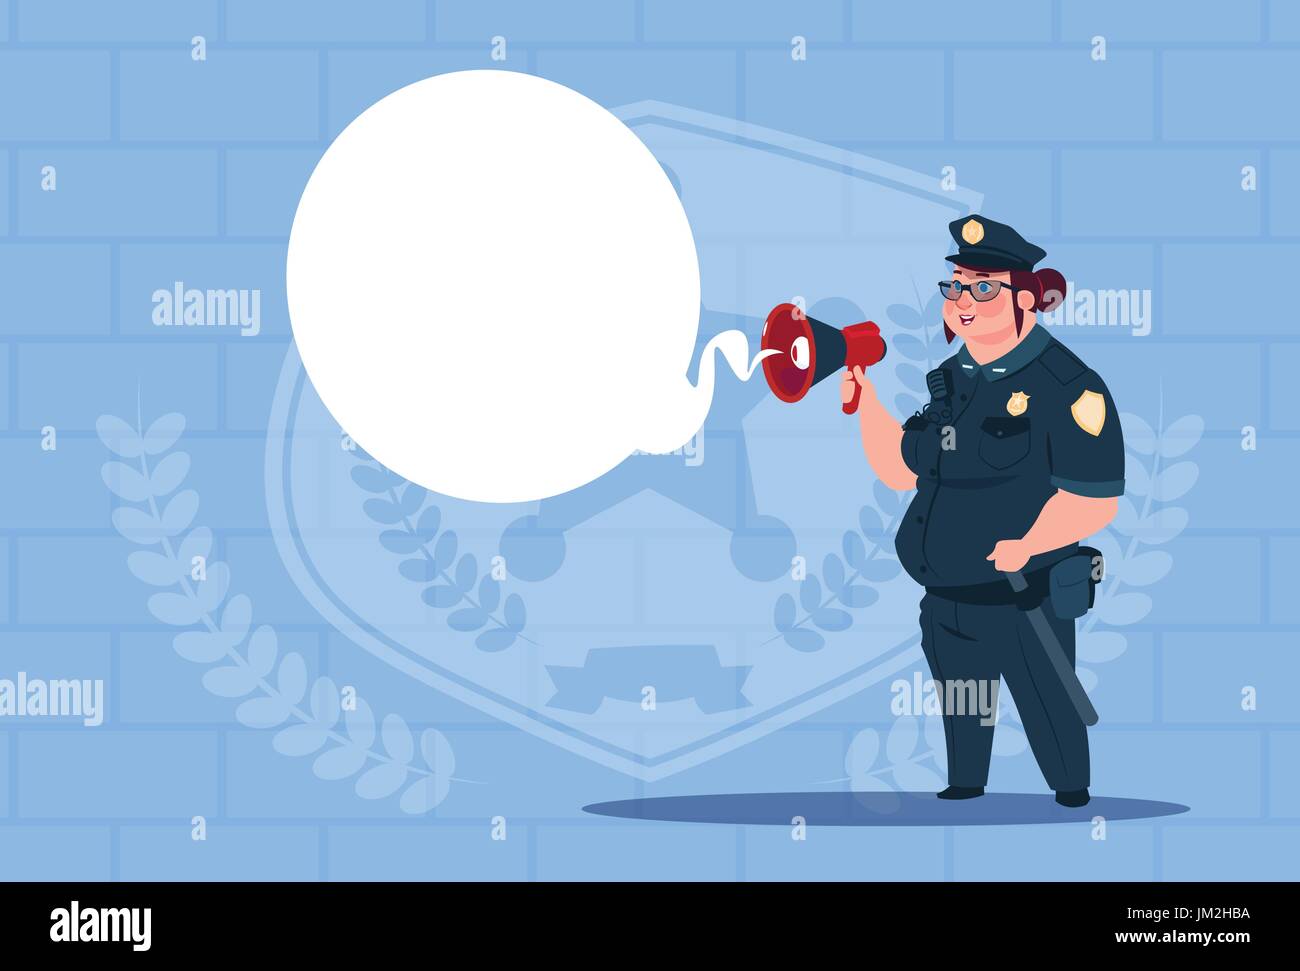 L'action de planification Police Woman On White Board en uniforme Gardienne sur bleu Banc Feuilles Illustration de Vecteur